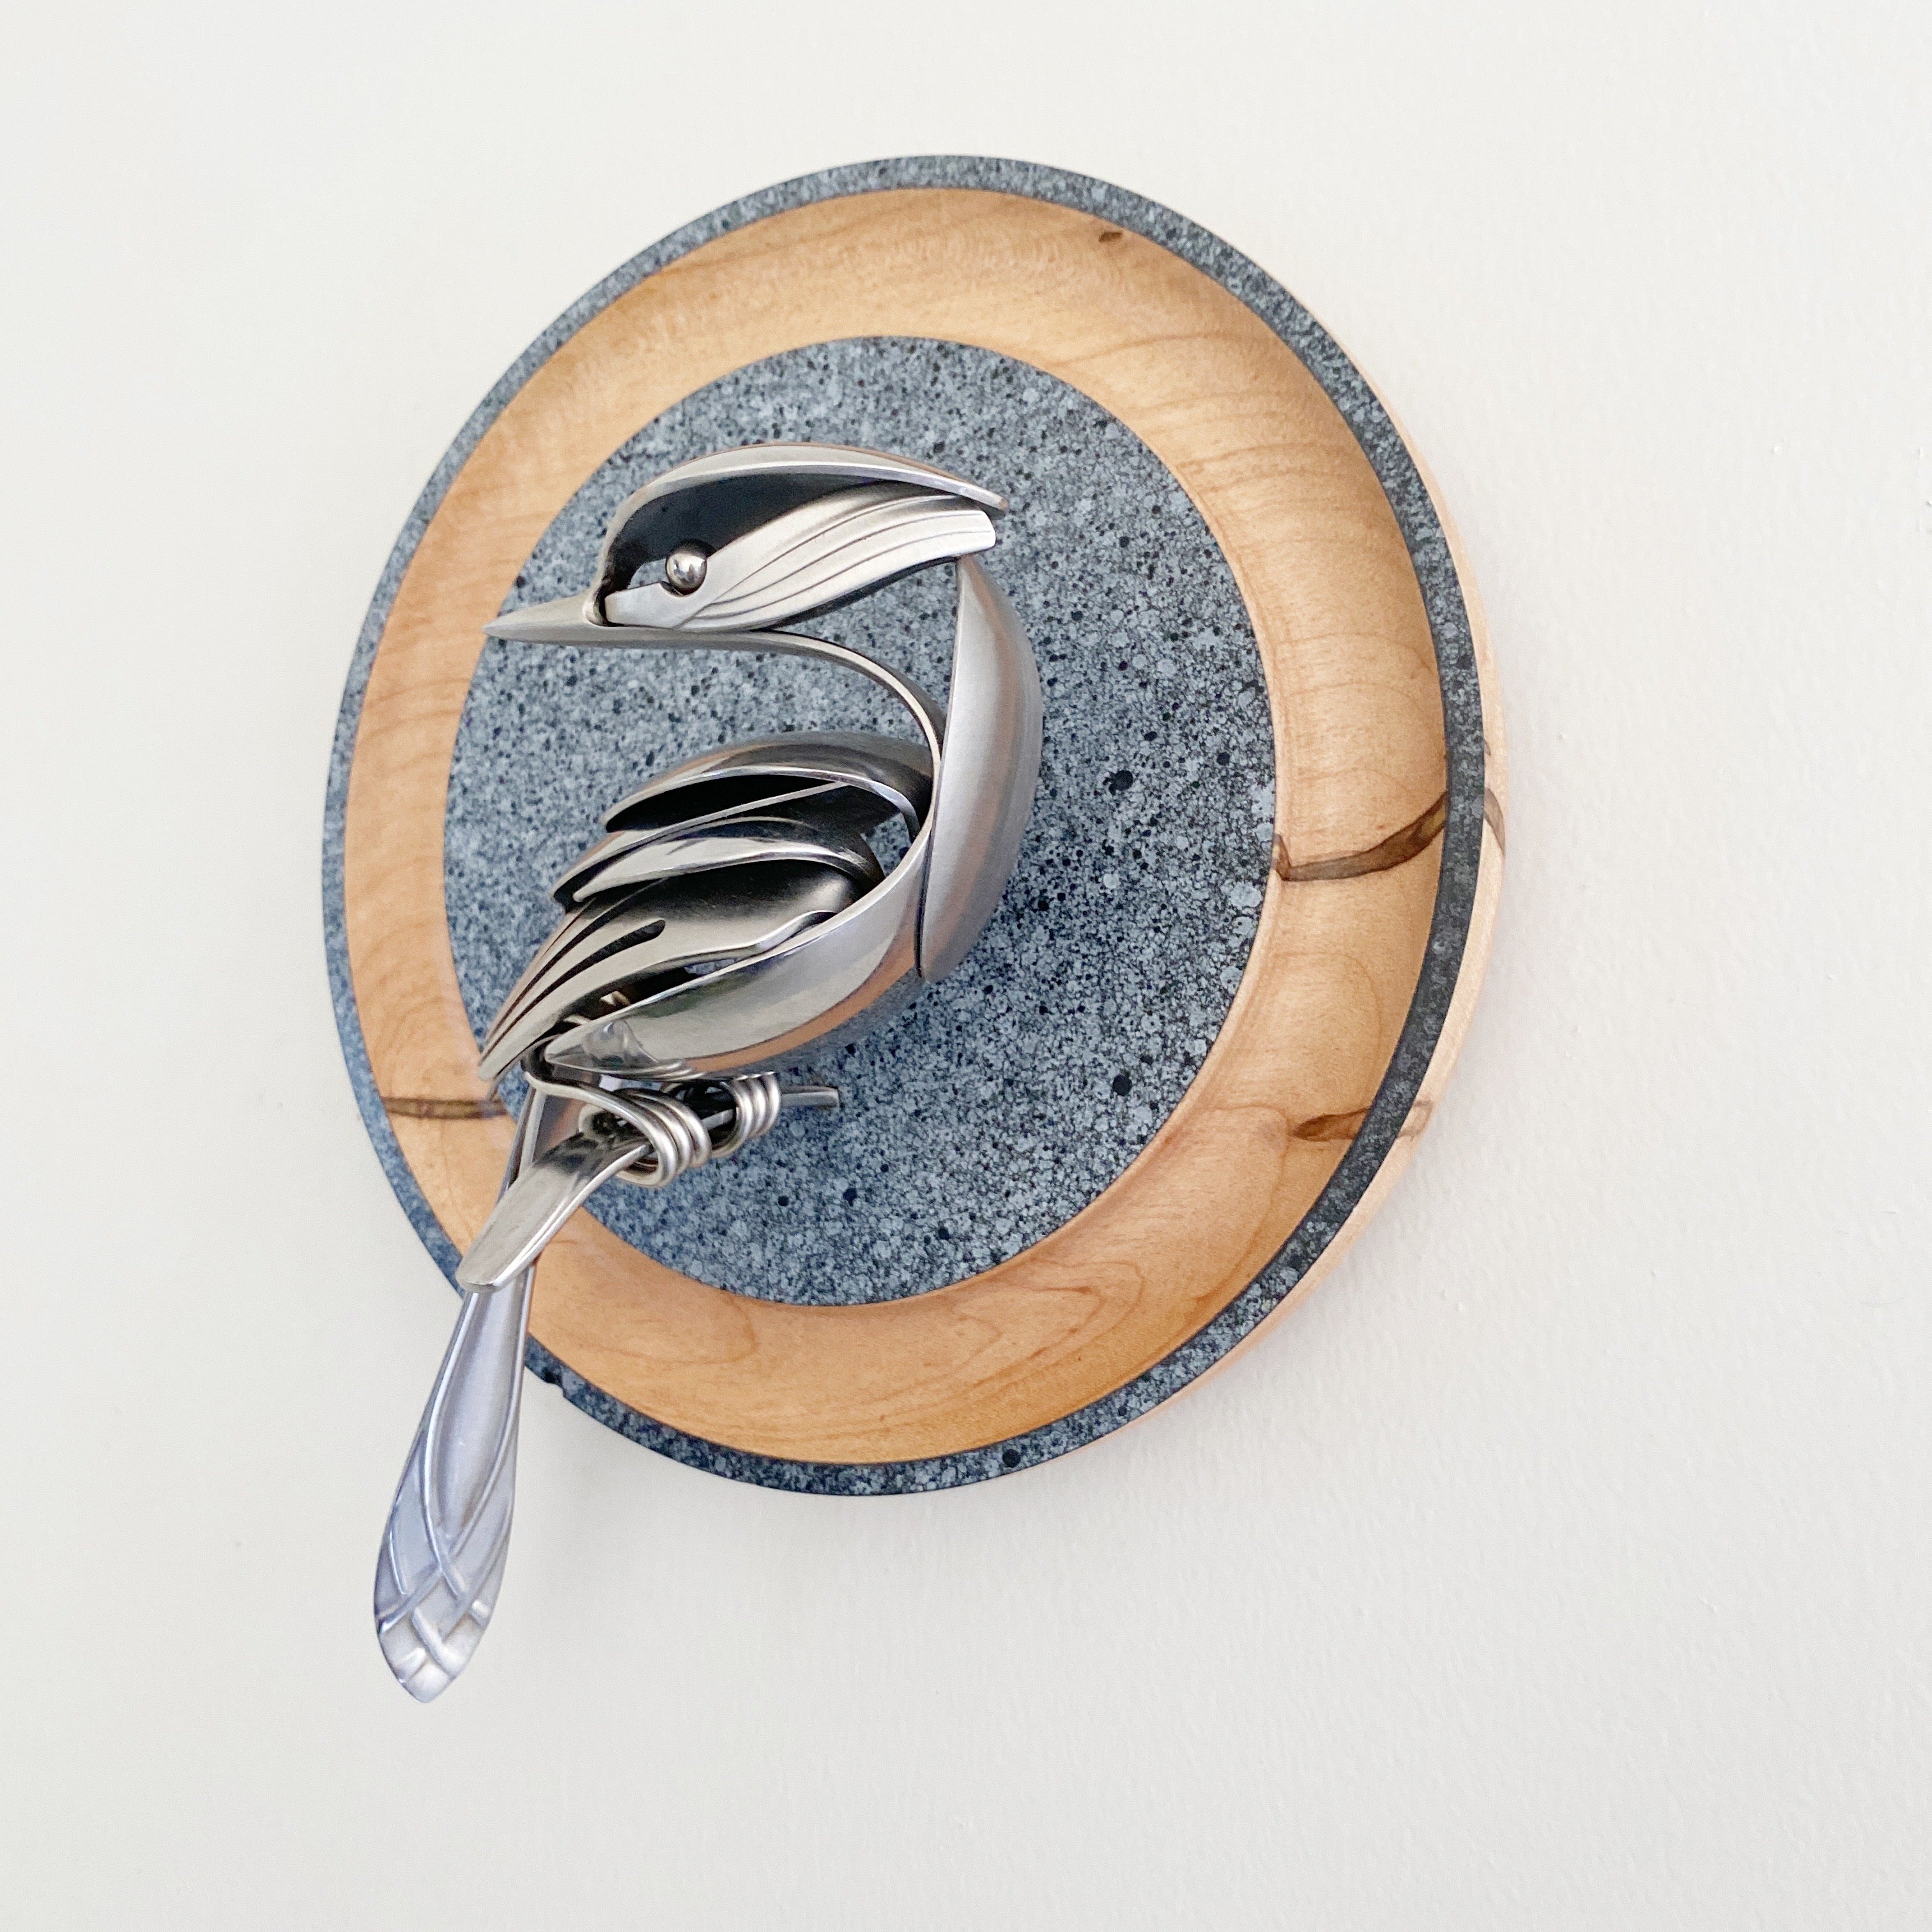 "Denali" - Upcycled Metal Bird Sculpture